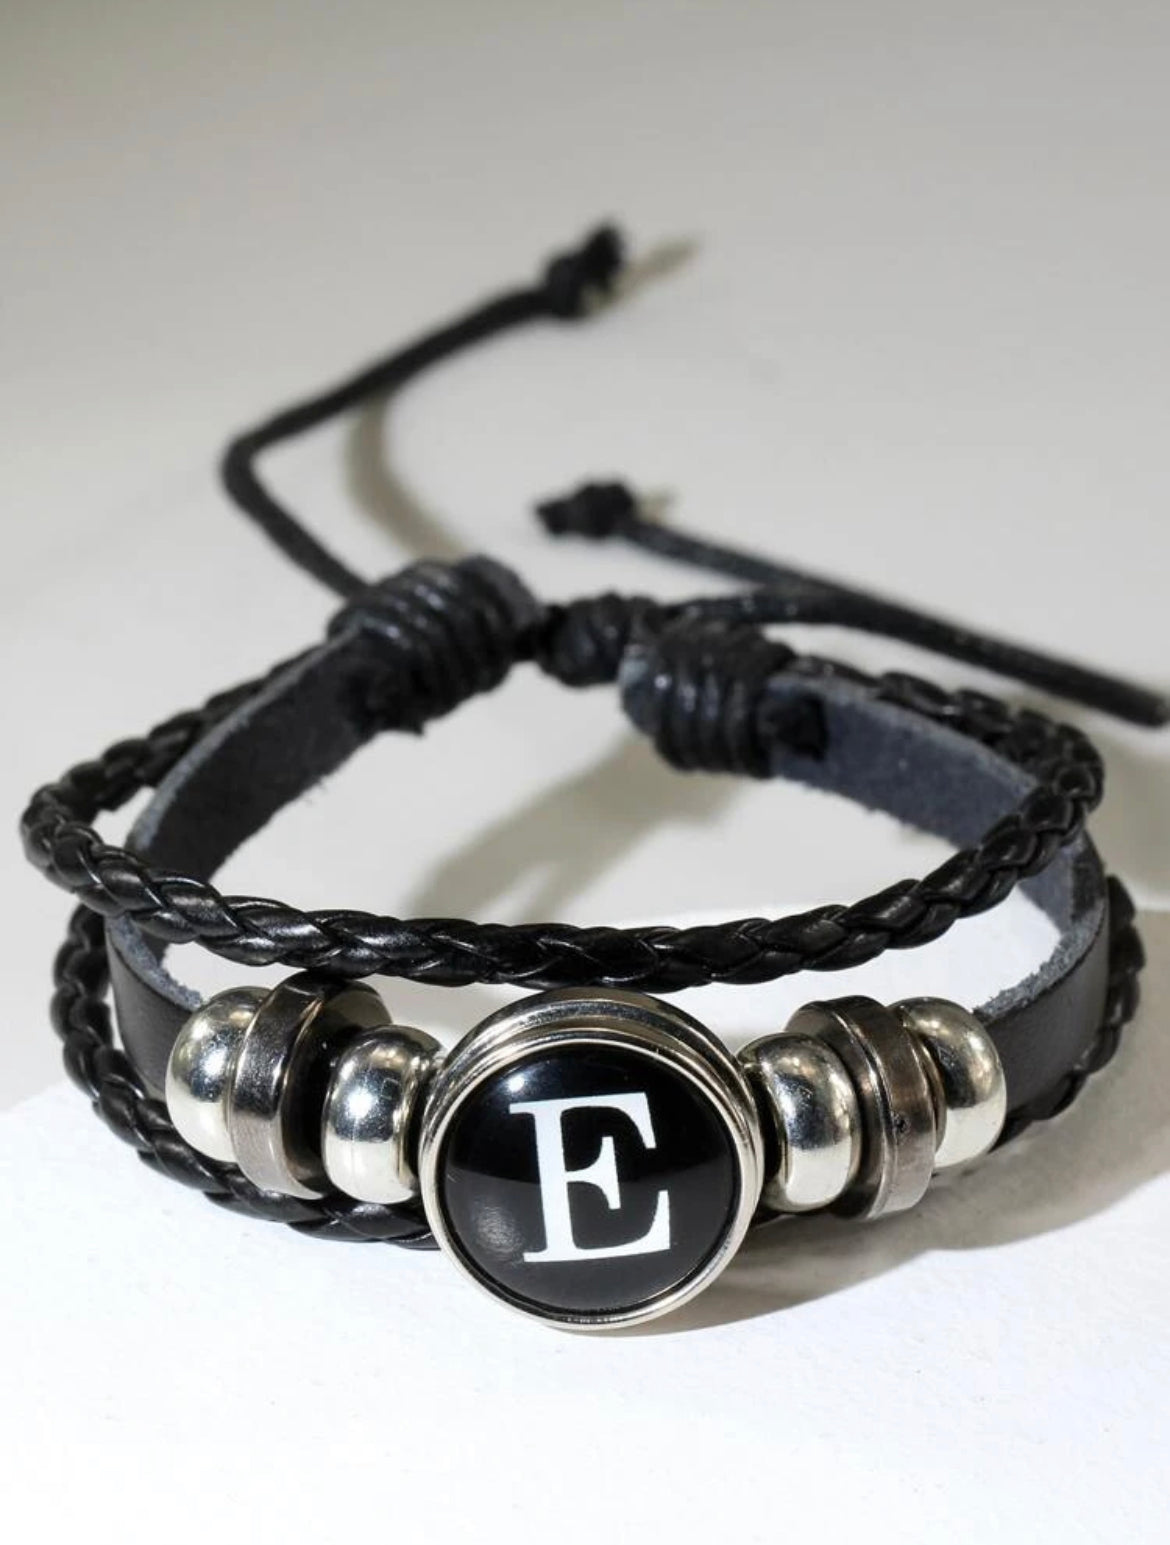 Vegan Leather Letter “E” Bracelet